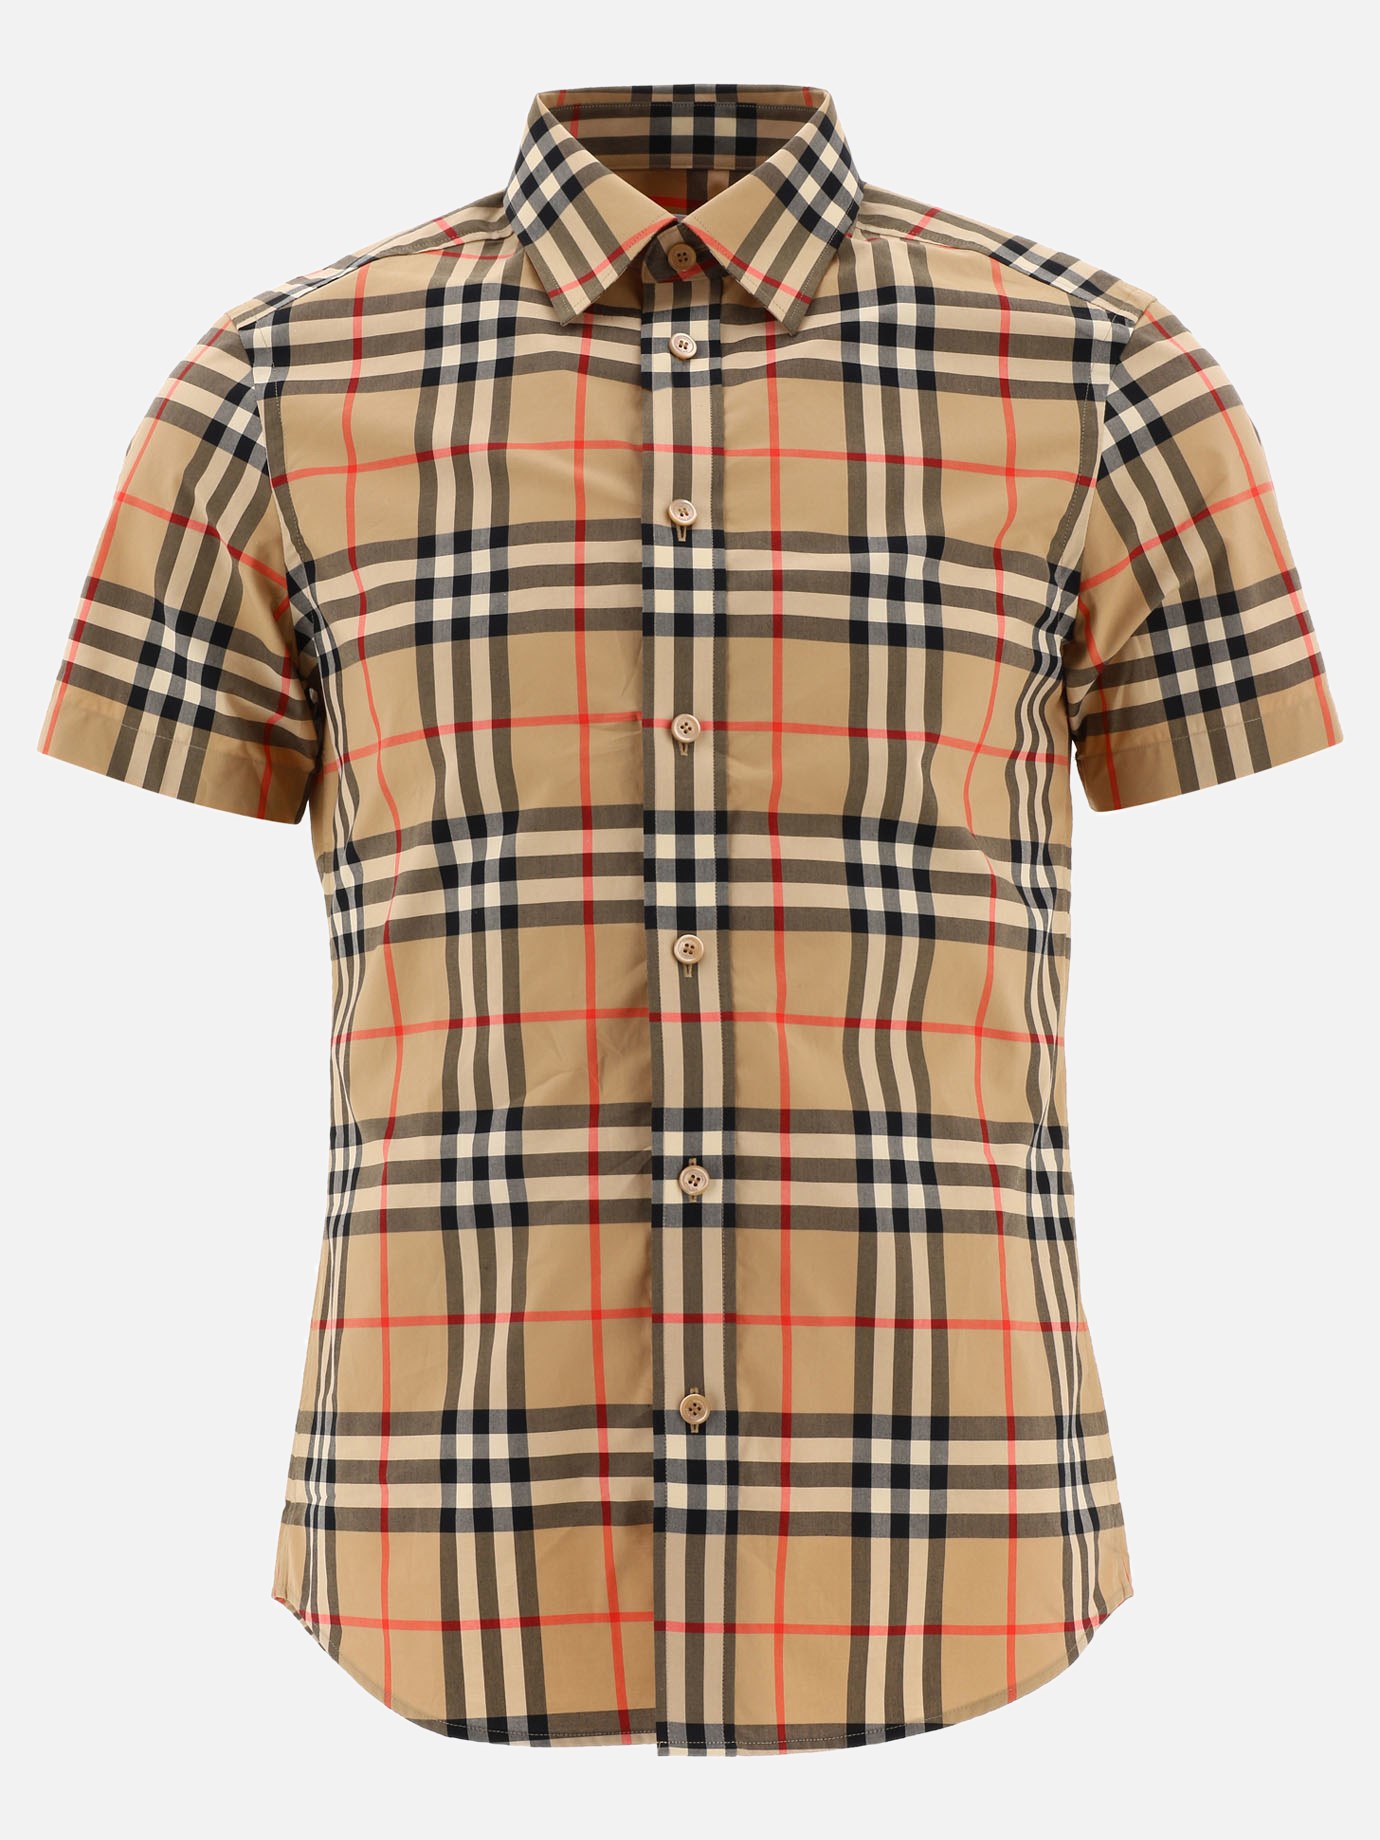  Vintage Check  shirtby Burberry - 5